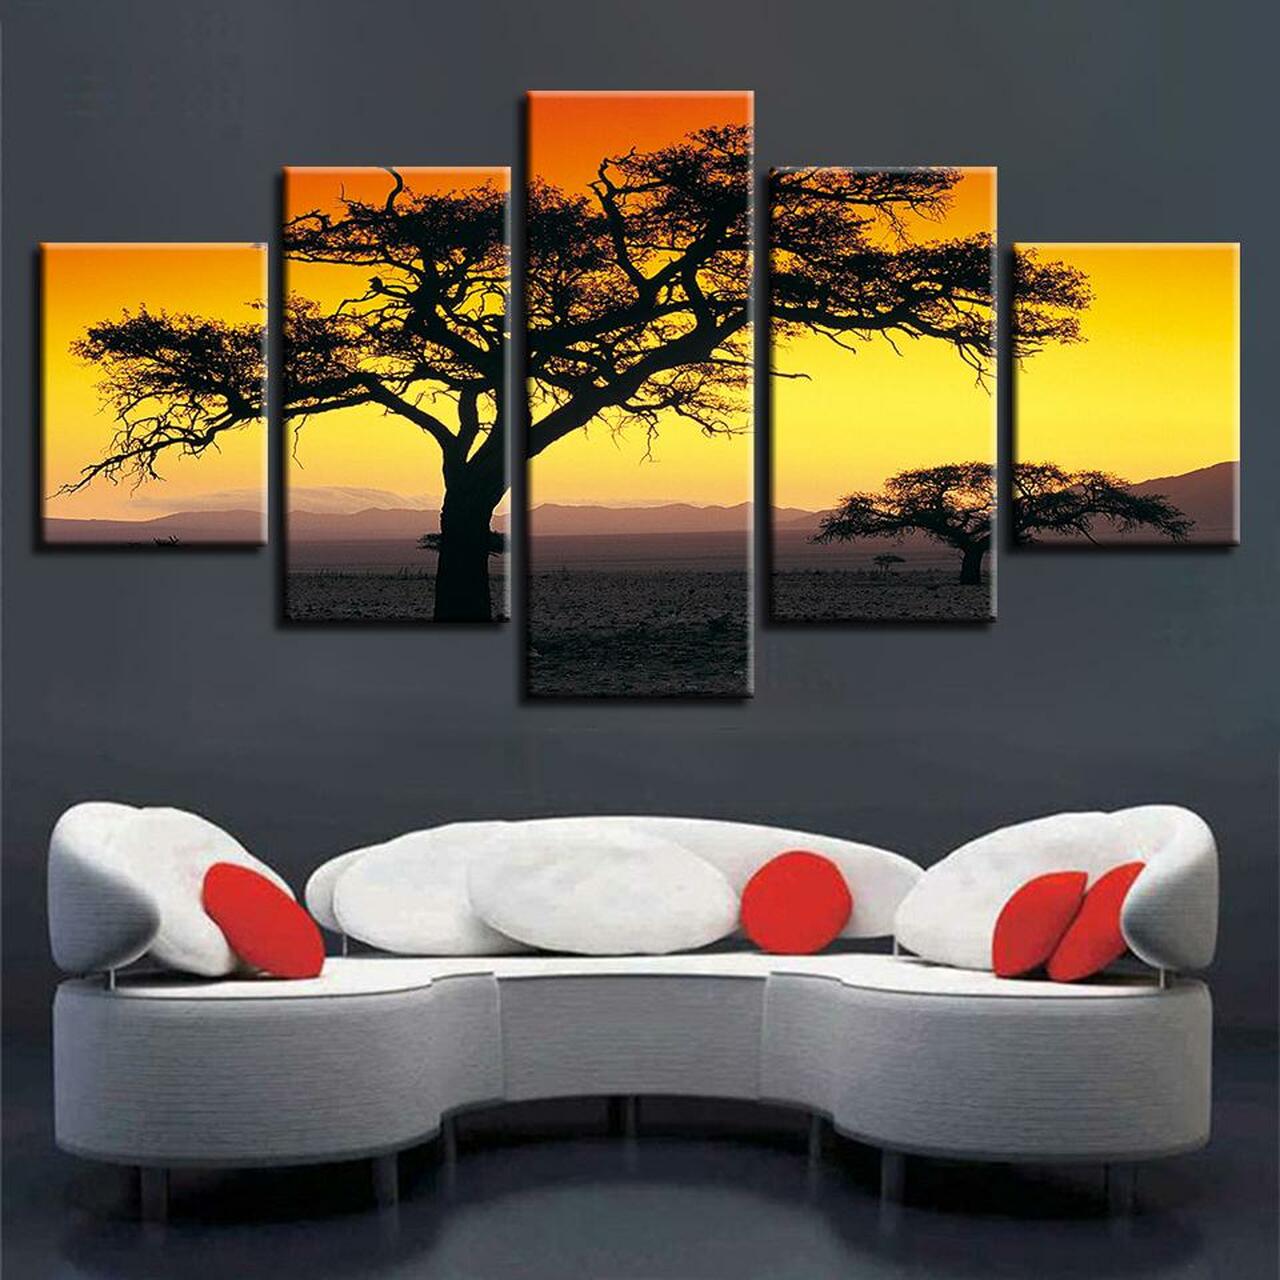 sunset in wilderness 5 pices peinture sur toile impression sur toile toile art pour la dcoration intrieurefkp53